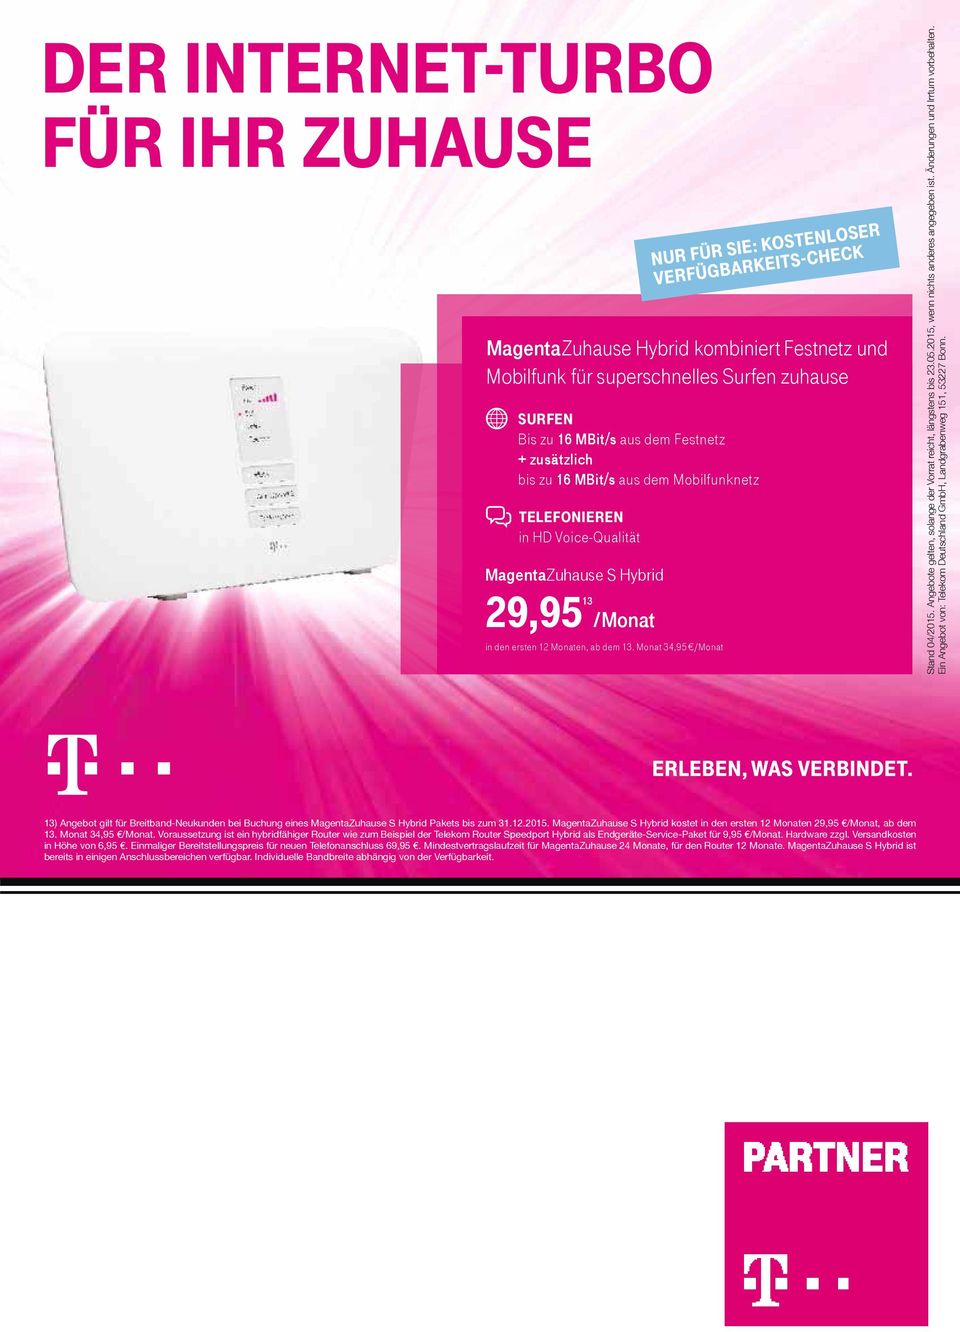 Änderungen und Irrtum vorbehalten. Ein Angebot von: Telekom Deutschland GmbH, Landgrabenweg 151, 53227 Bonn.